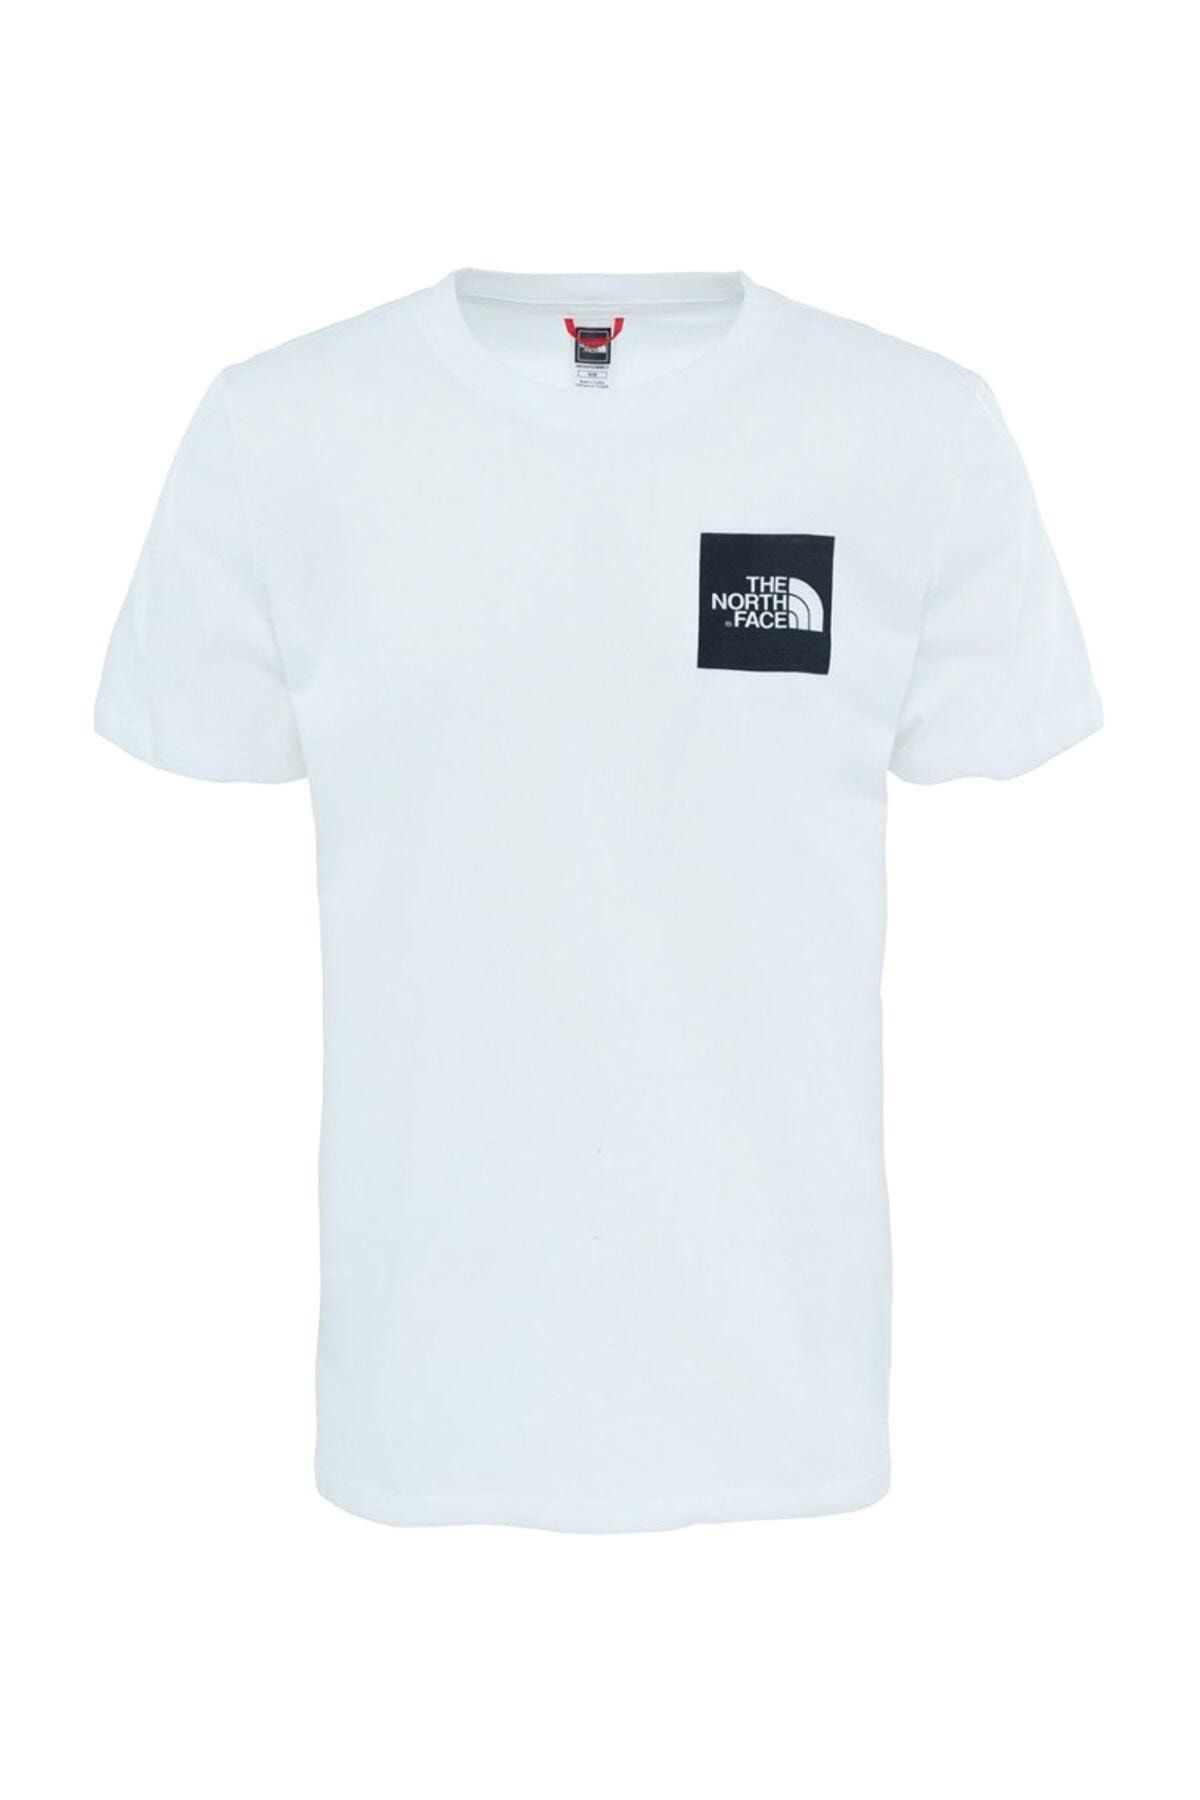 The North Face تی شرت مردانه زیبا - T0CEQ5LA9